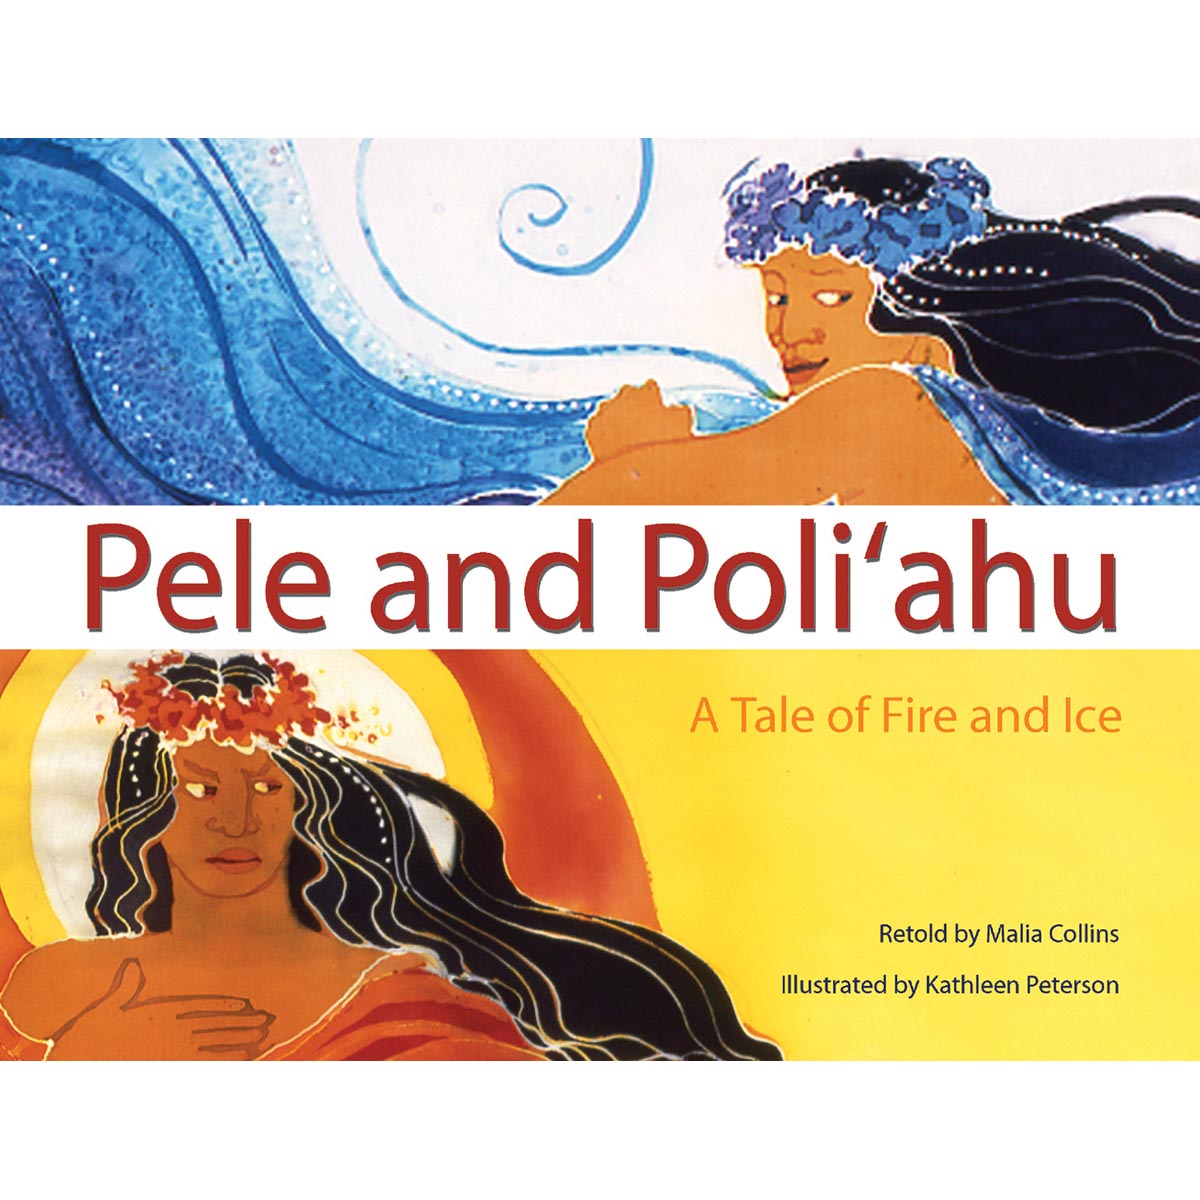 Pele and Poliʻahu: A Tale of Fire and Ice